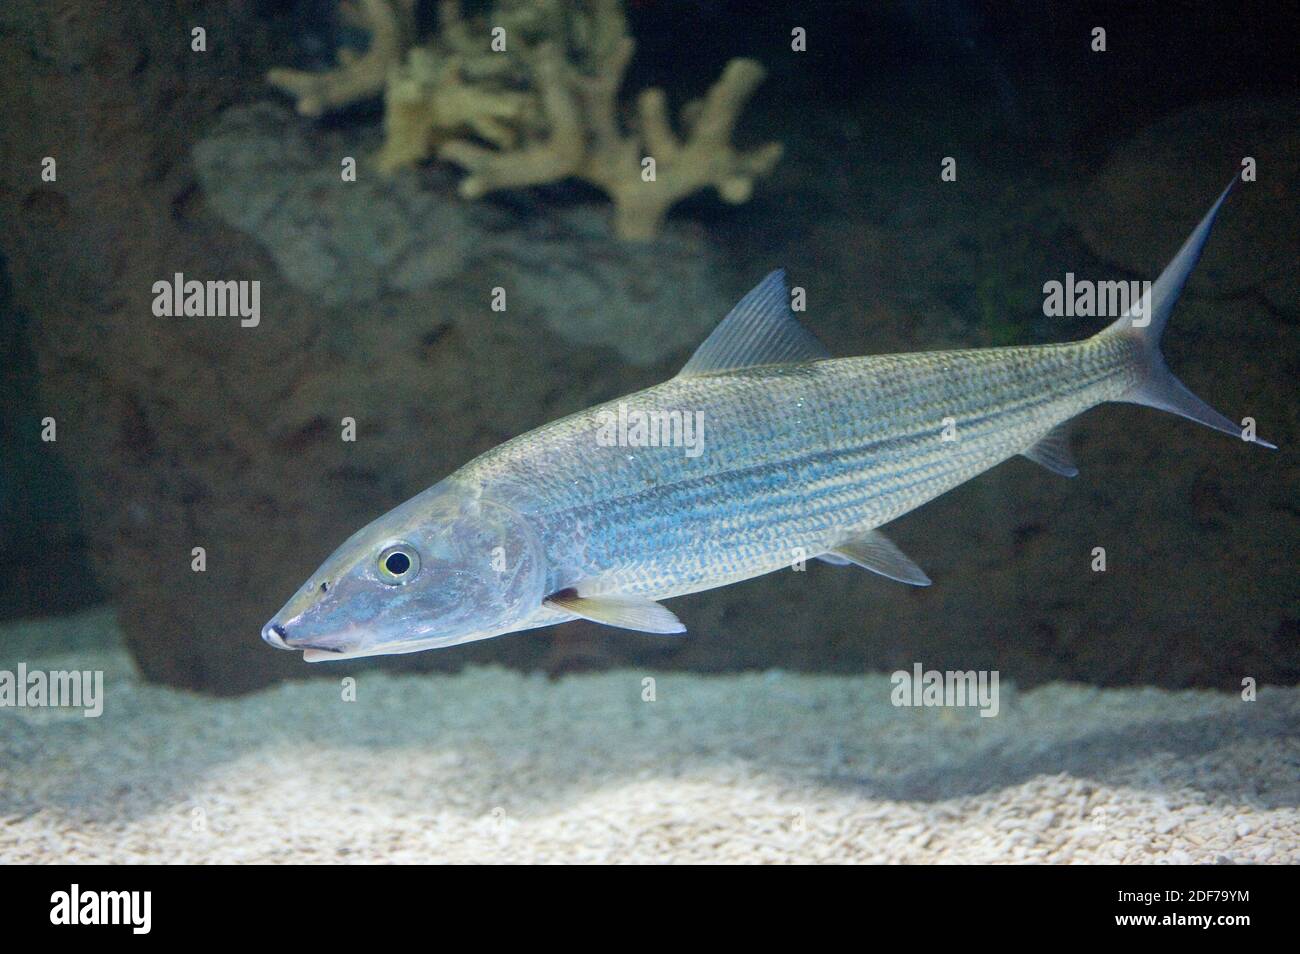 Bonefish (Albula vulpes) es un pez marino nativo del Golfo de México. Foto de stock